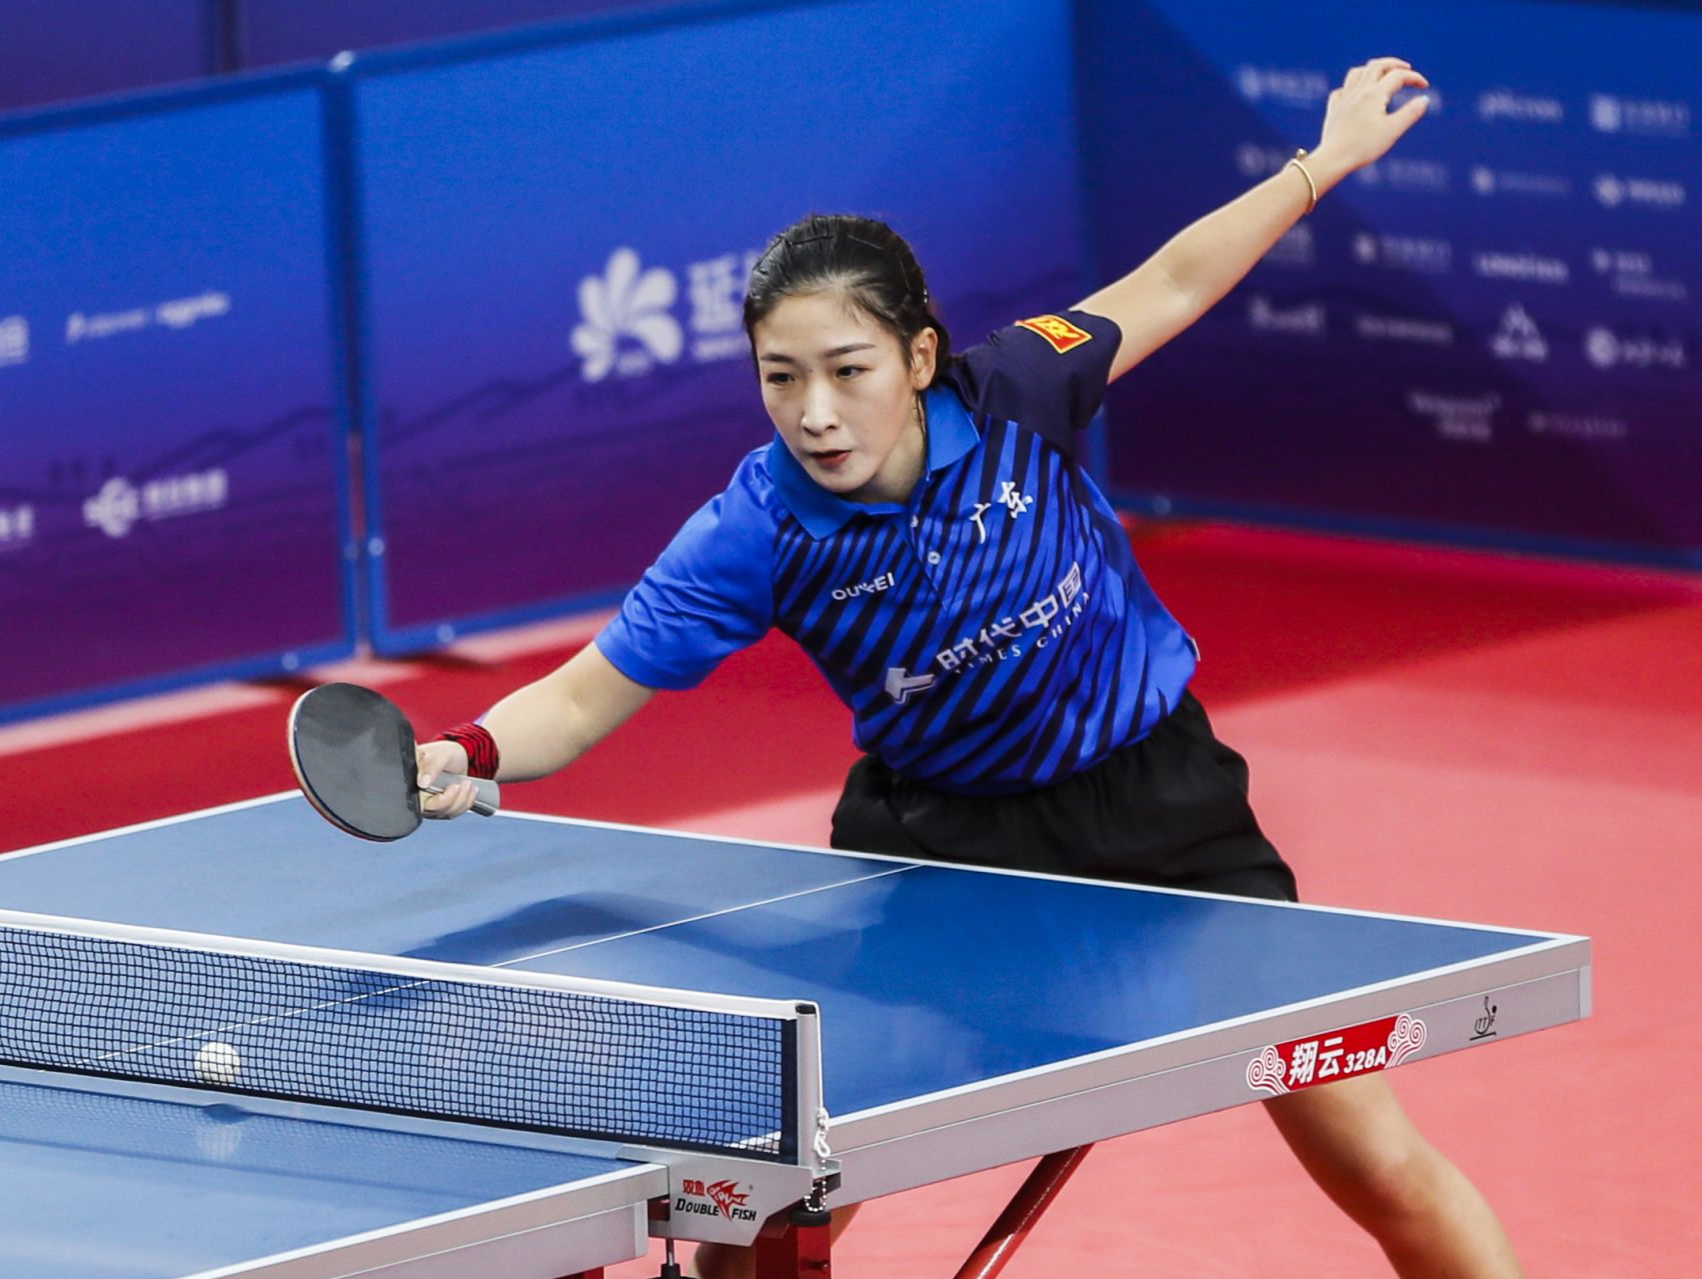 刘诗雯入围国际乒联运动员委员会候选名单